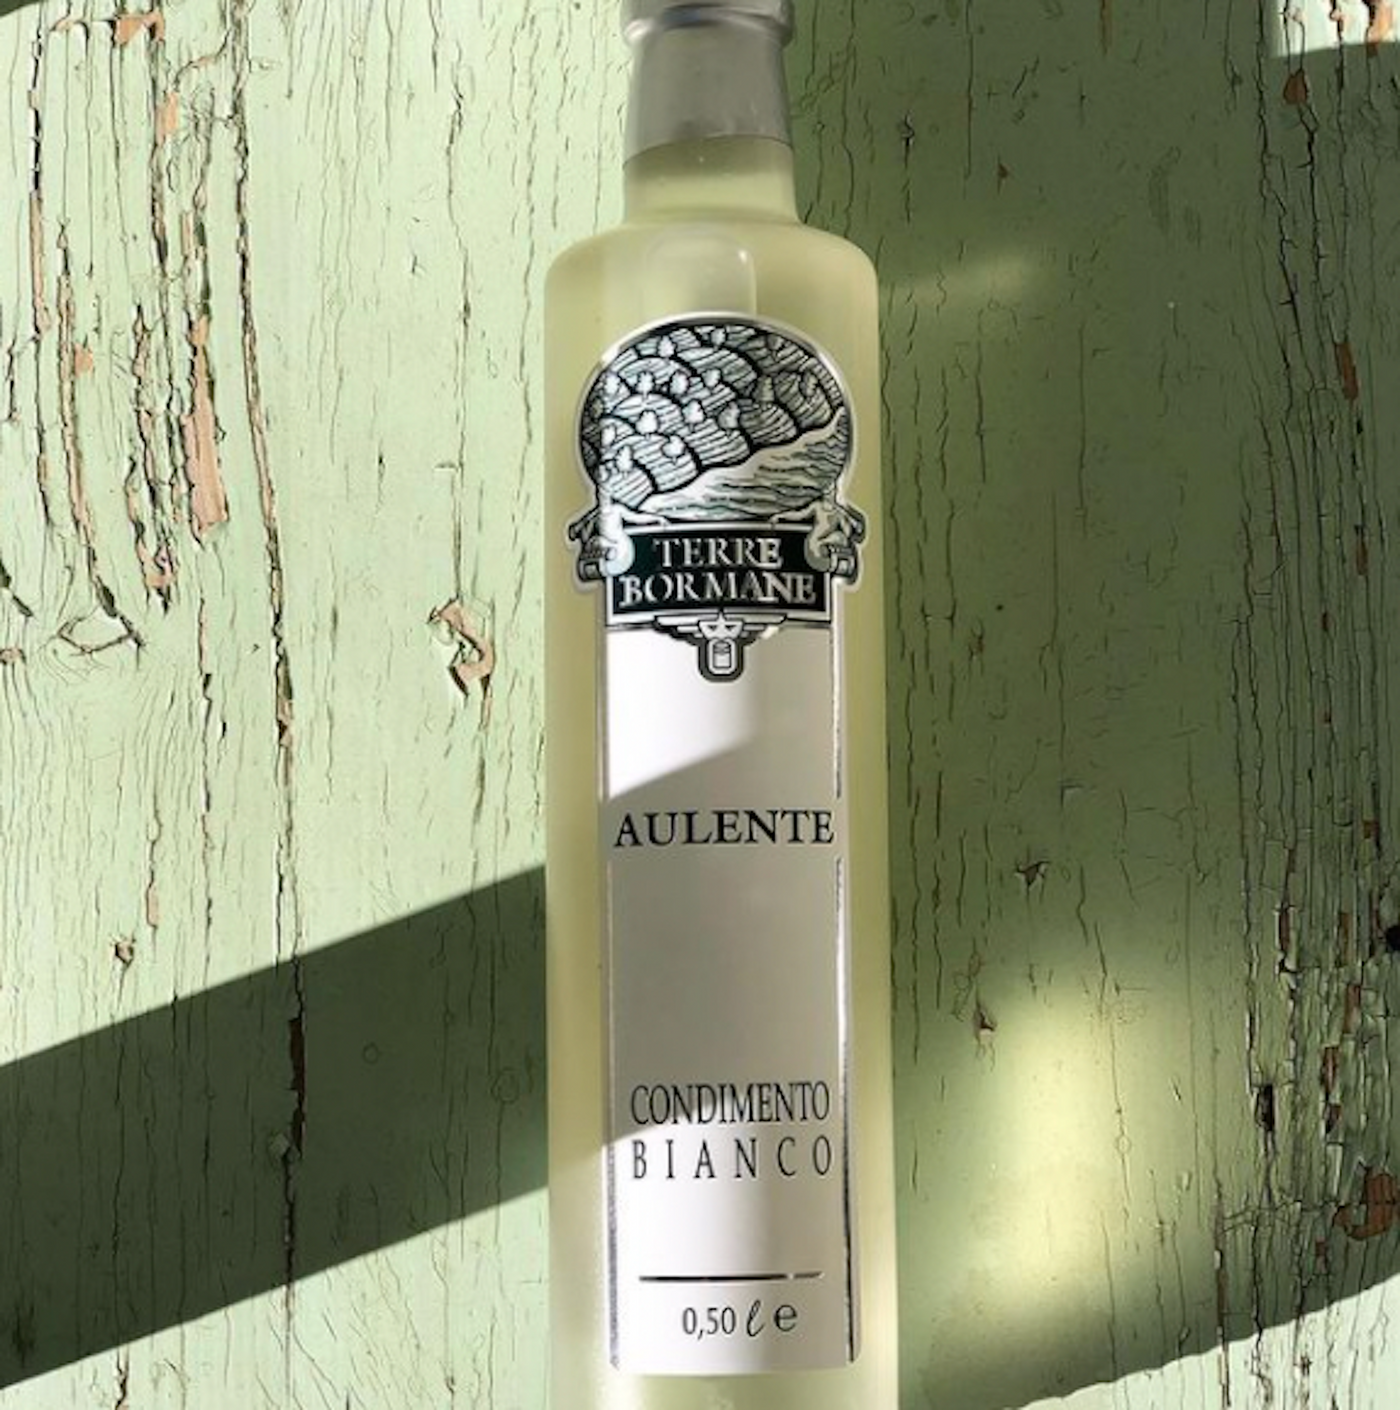 White Balsamic Vinegar “Aulente” | TERRE BORMANE | 500ml